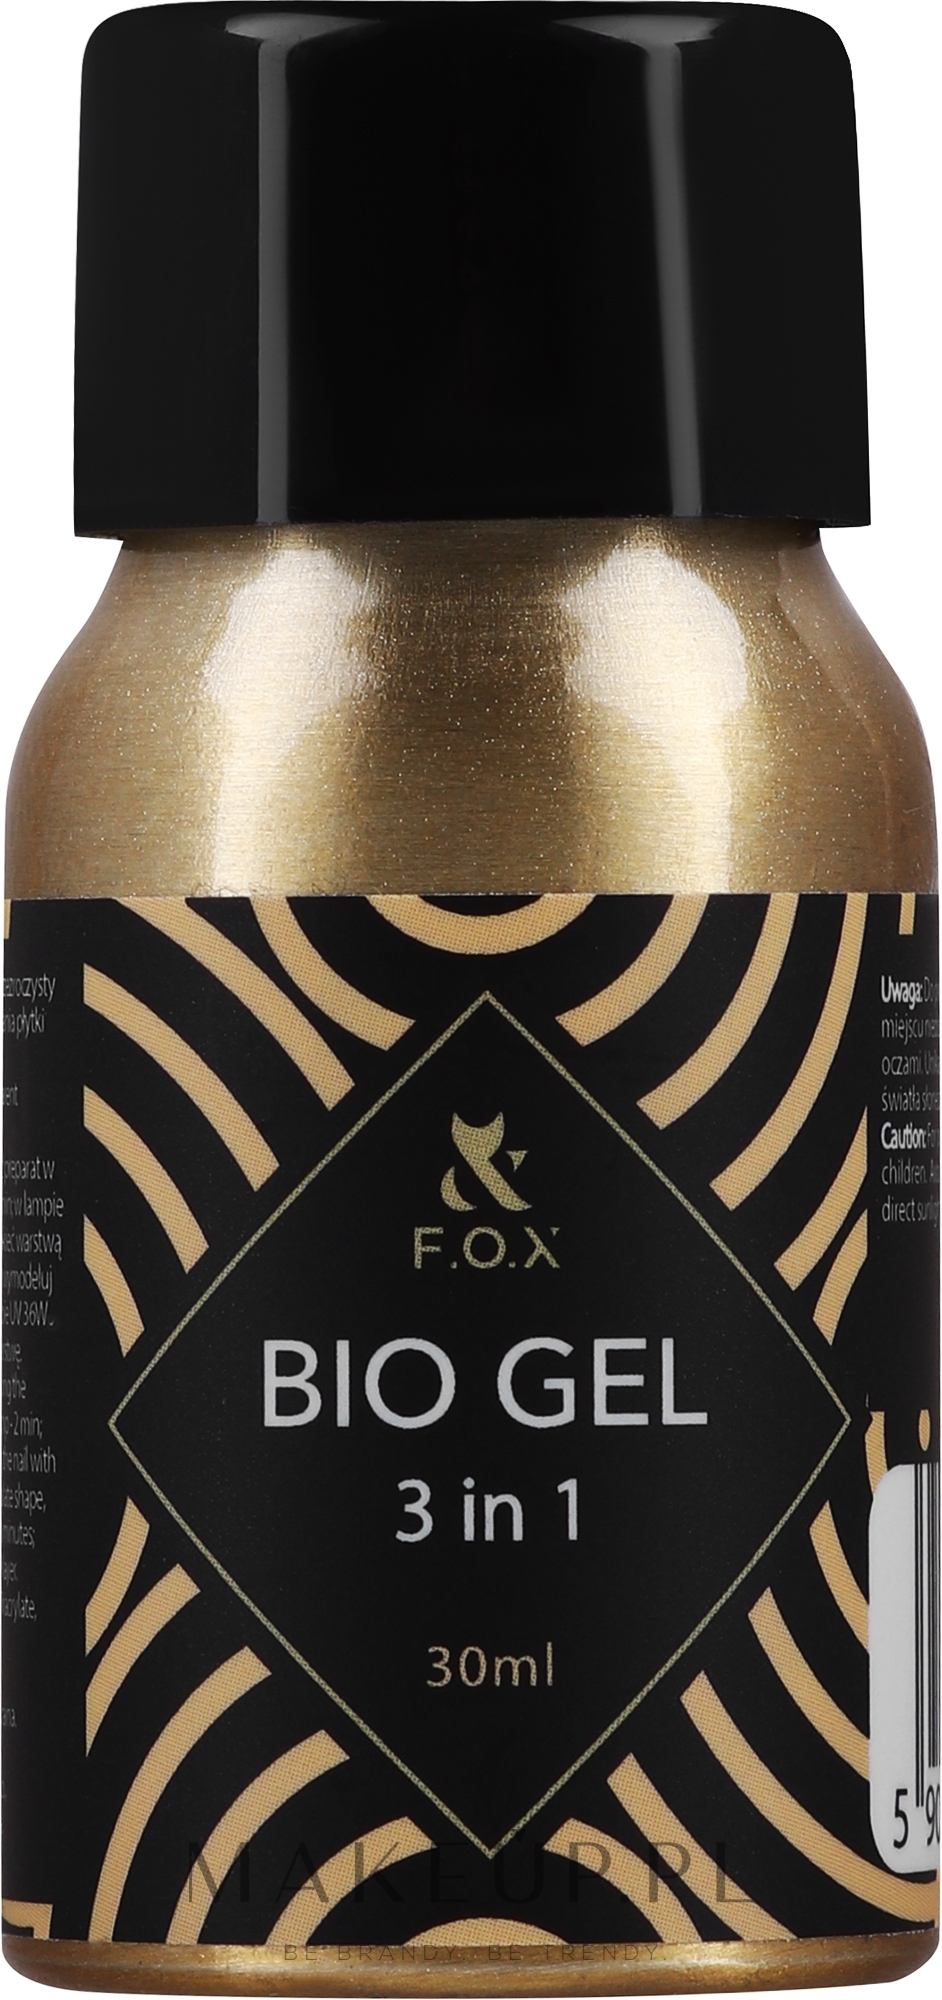 Przezroczysty biożel do paznokci - F.o.x Bio Gel 3 in 1 Base Top Builder — Zdjęcie 30 ml